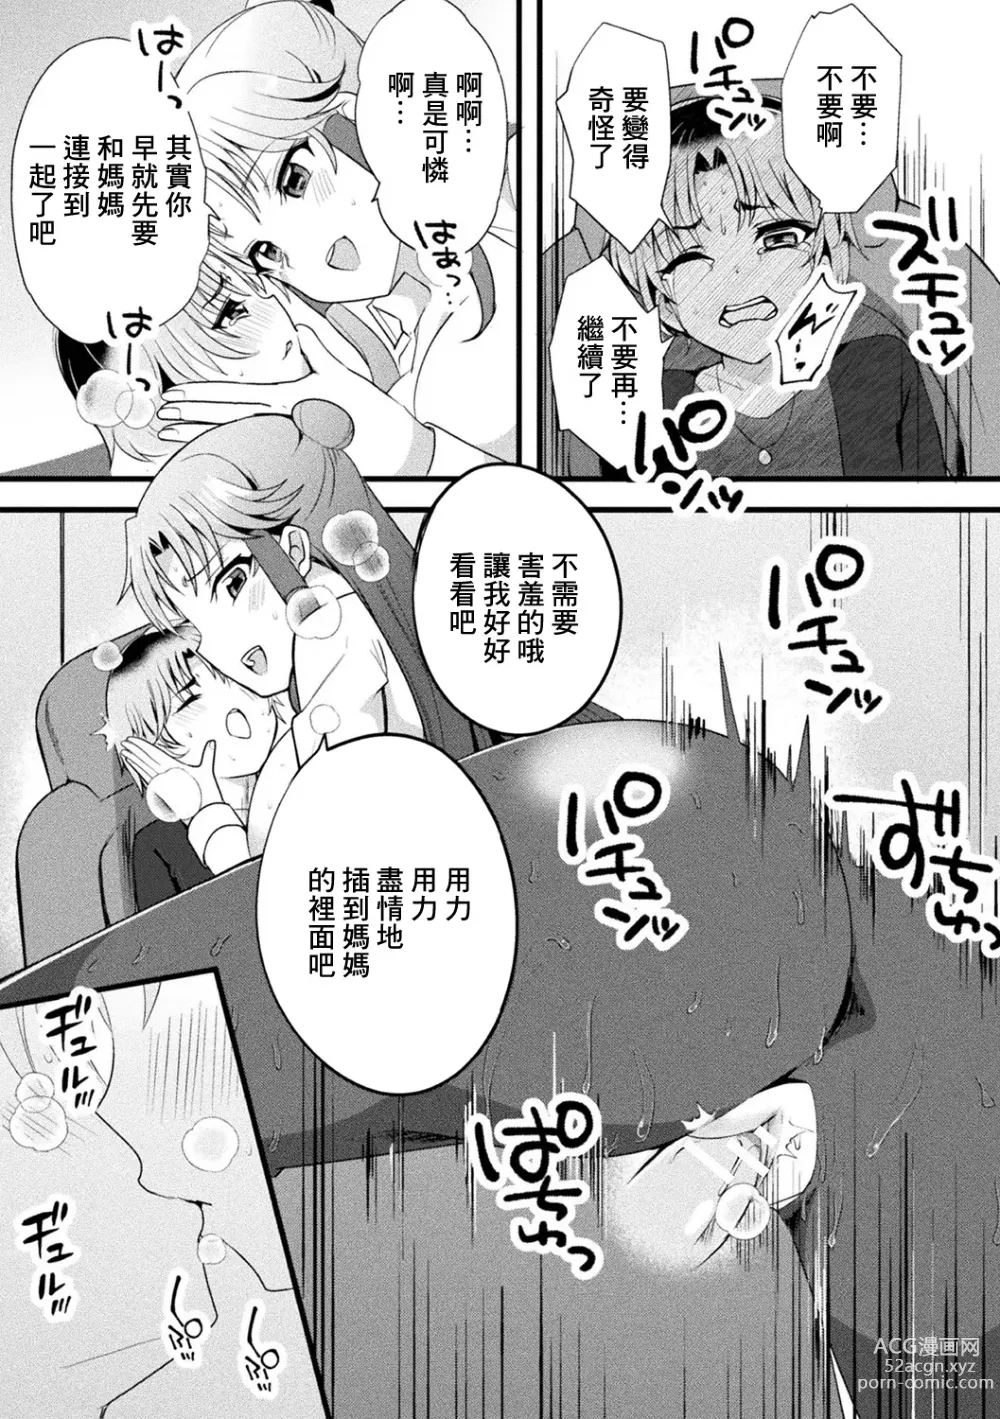 Page 13 of manga Mama Doko Doko - Mom! Where are you?